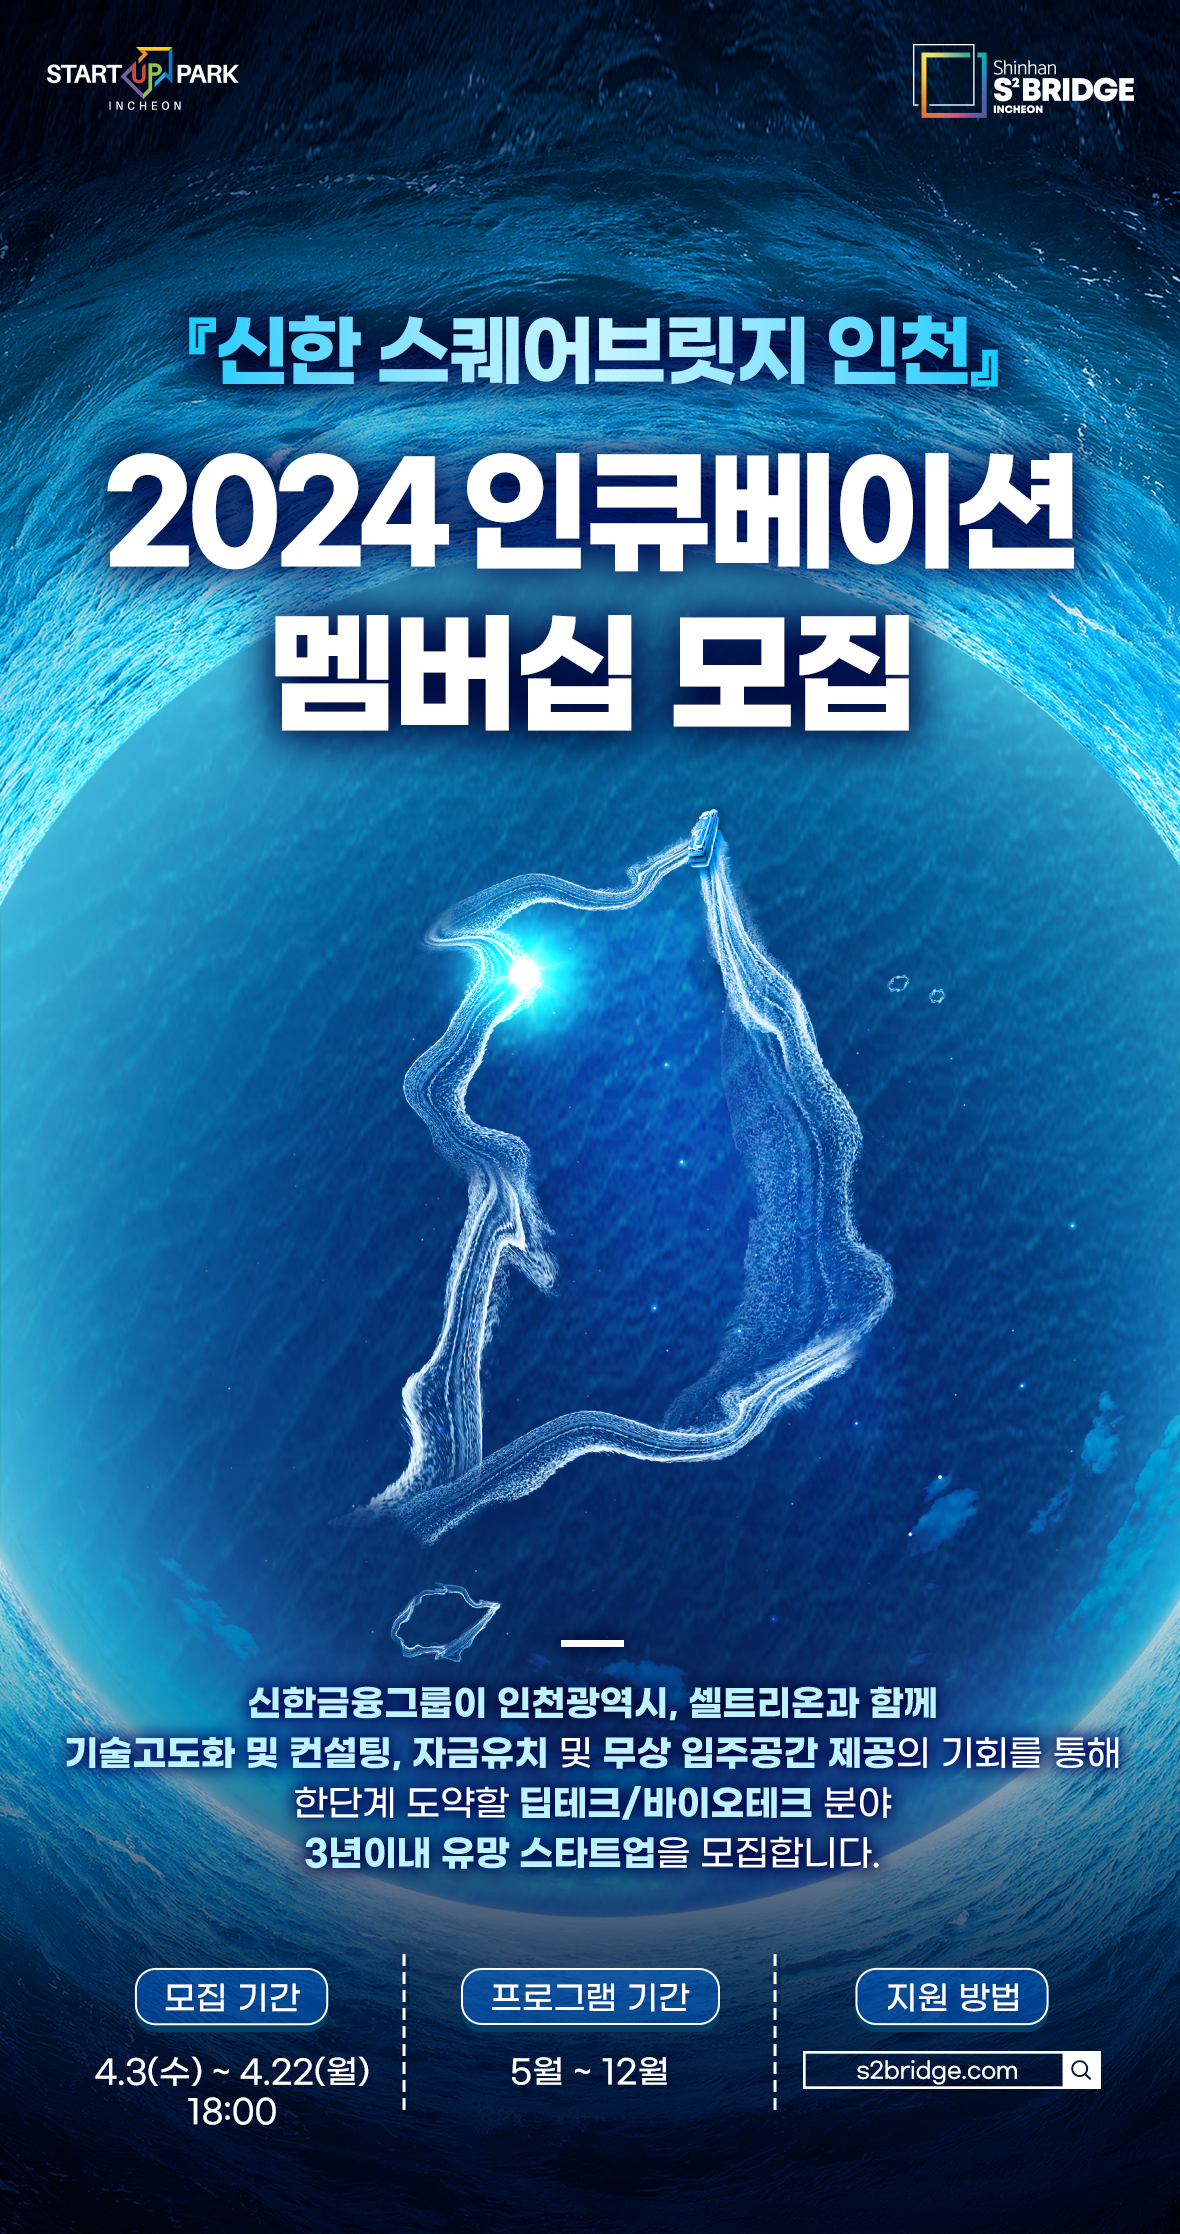 『신한 스퀘어브릿지 인천』 2024 인큐베이션/액셀러레이팅 멤버십 모집안내